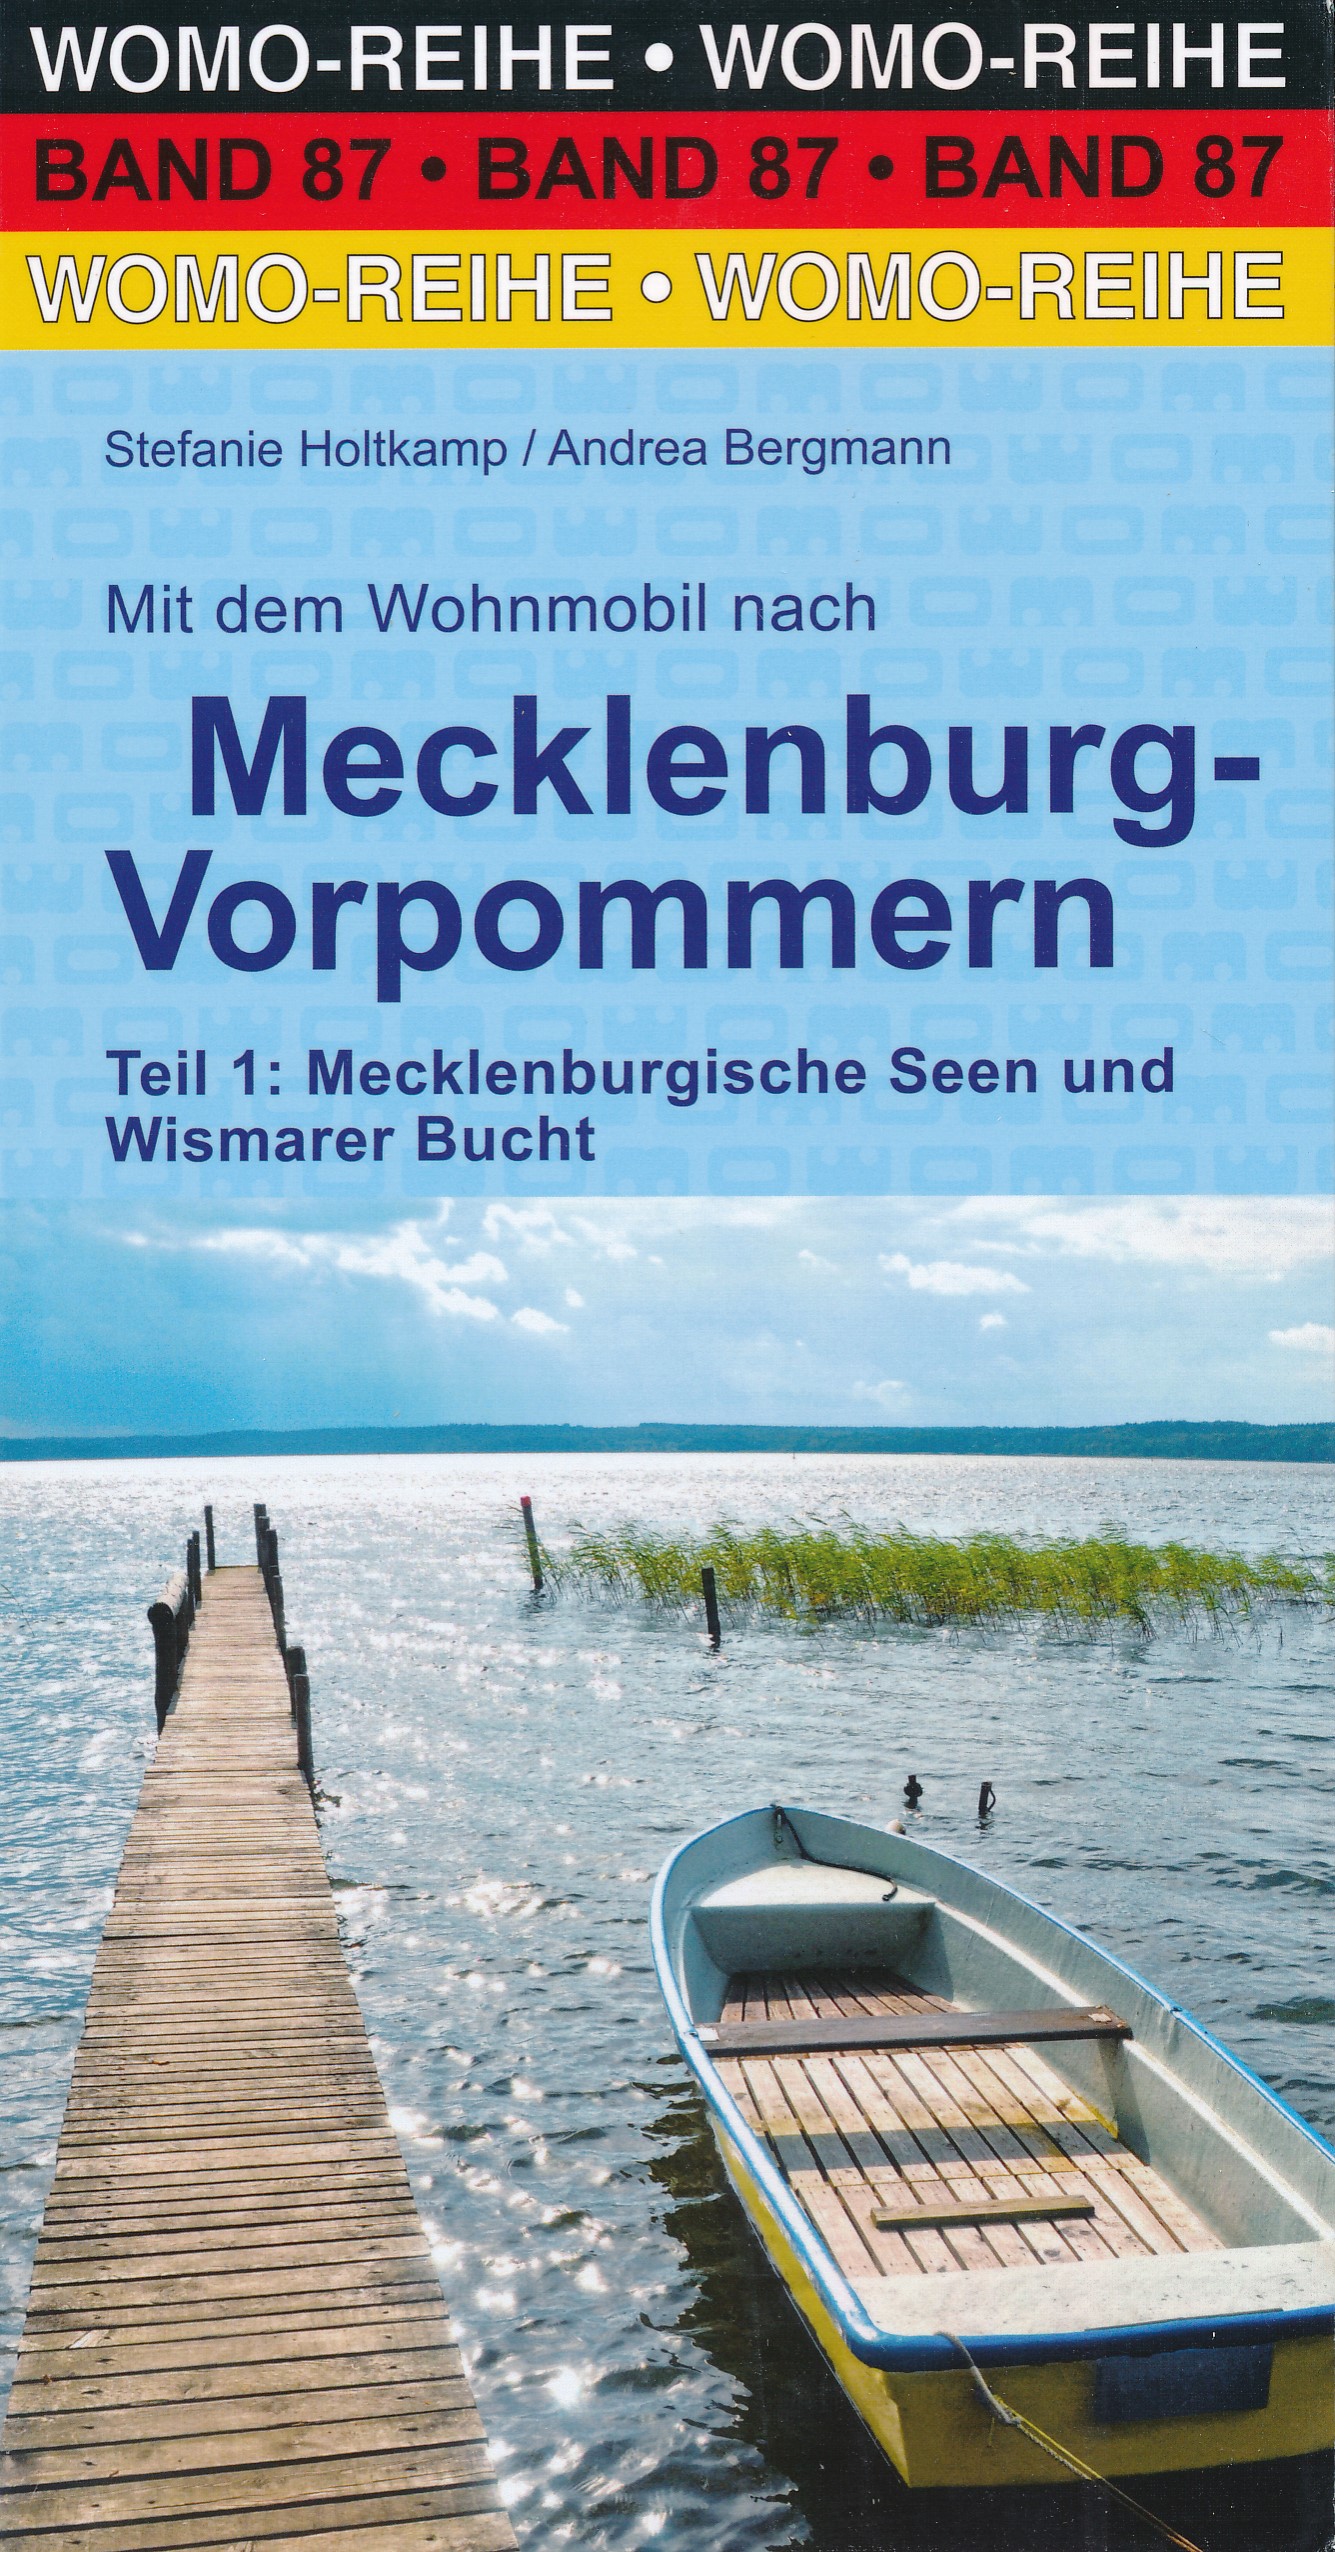 Online bestellen: Campergids 87 Mit dem Wohnmobil nach Meckelenburg - Vorpommern Teil 1 | WOMO verlag